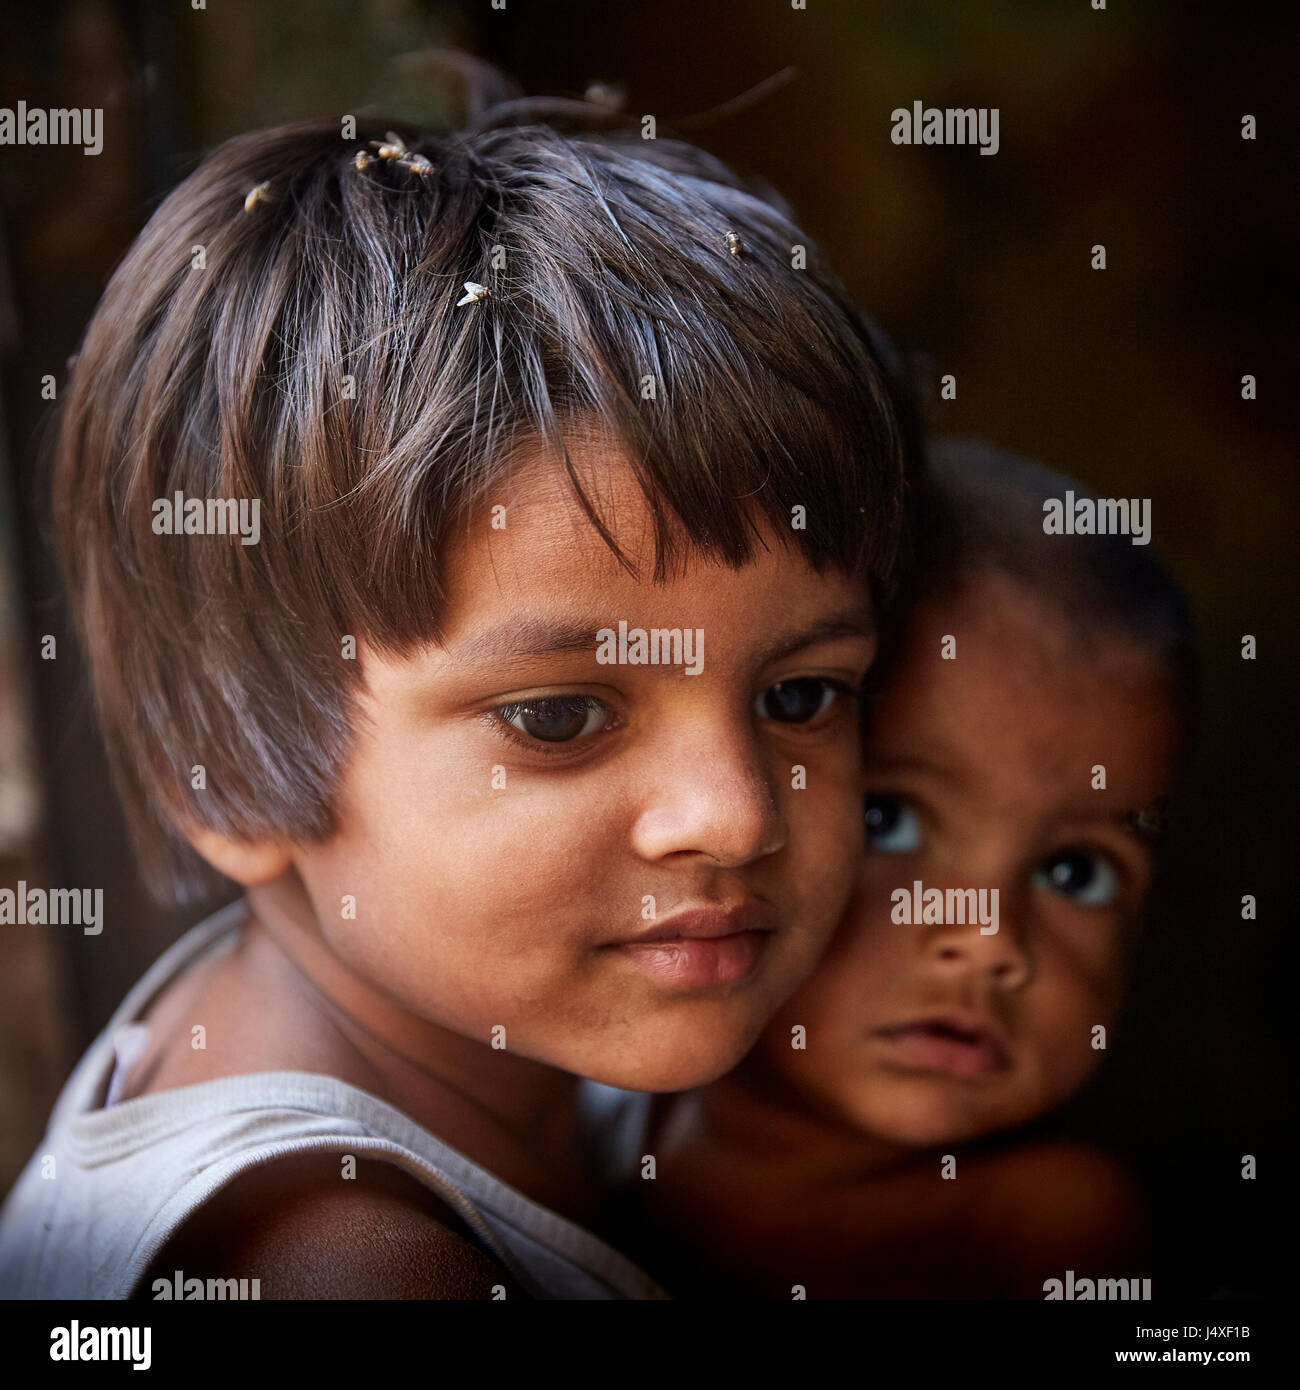 Fille indienne à New Delhi slum head and shoulders portrait à l'écart et en bas de l'appareil photo avec un frère dans l'arrière-plan foncé looking at camera Banque D'Images